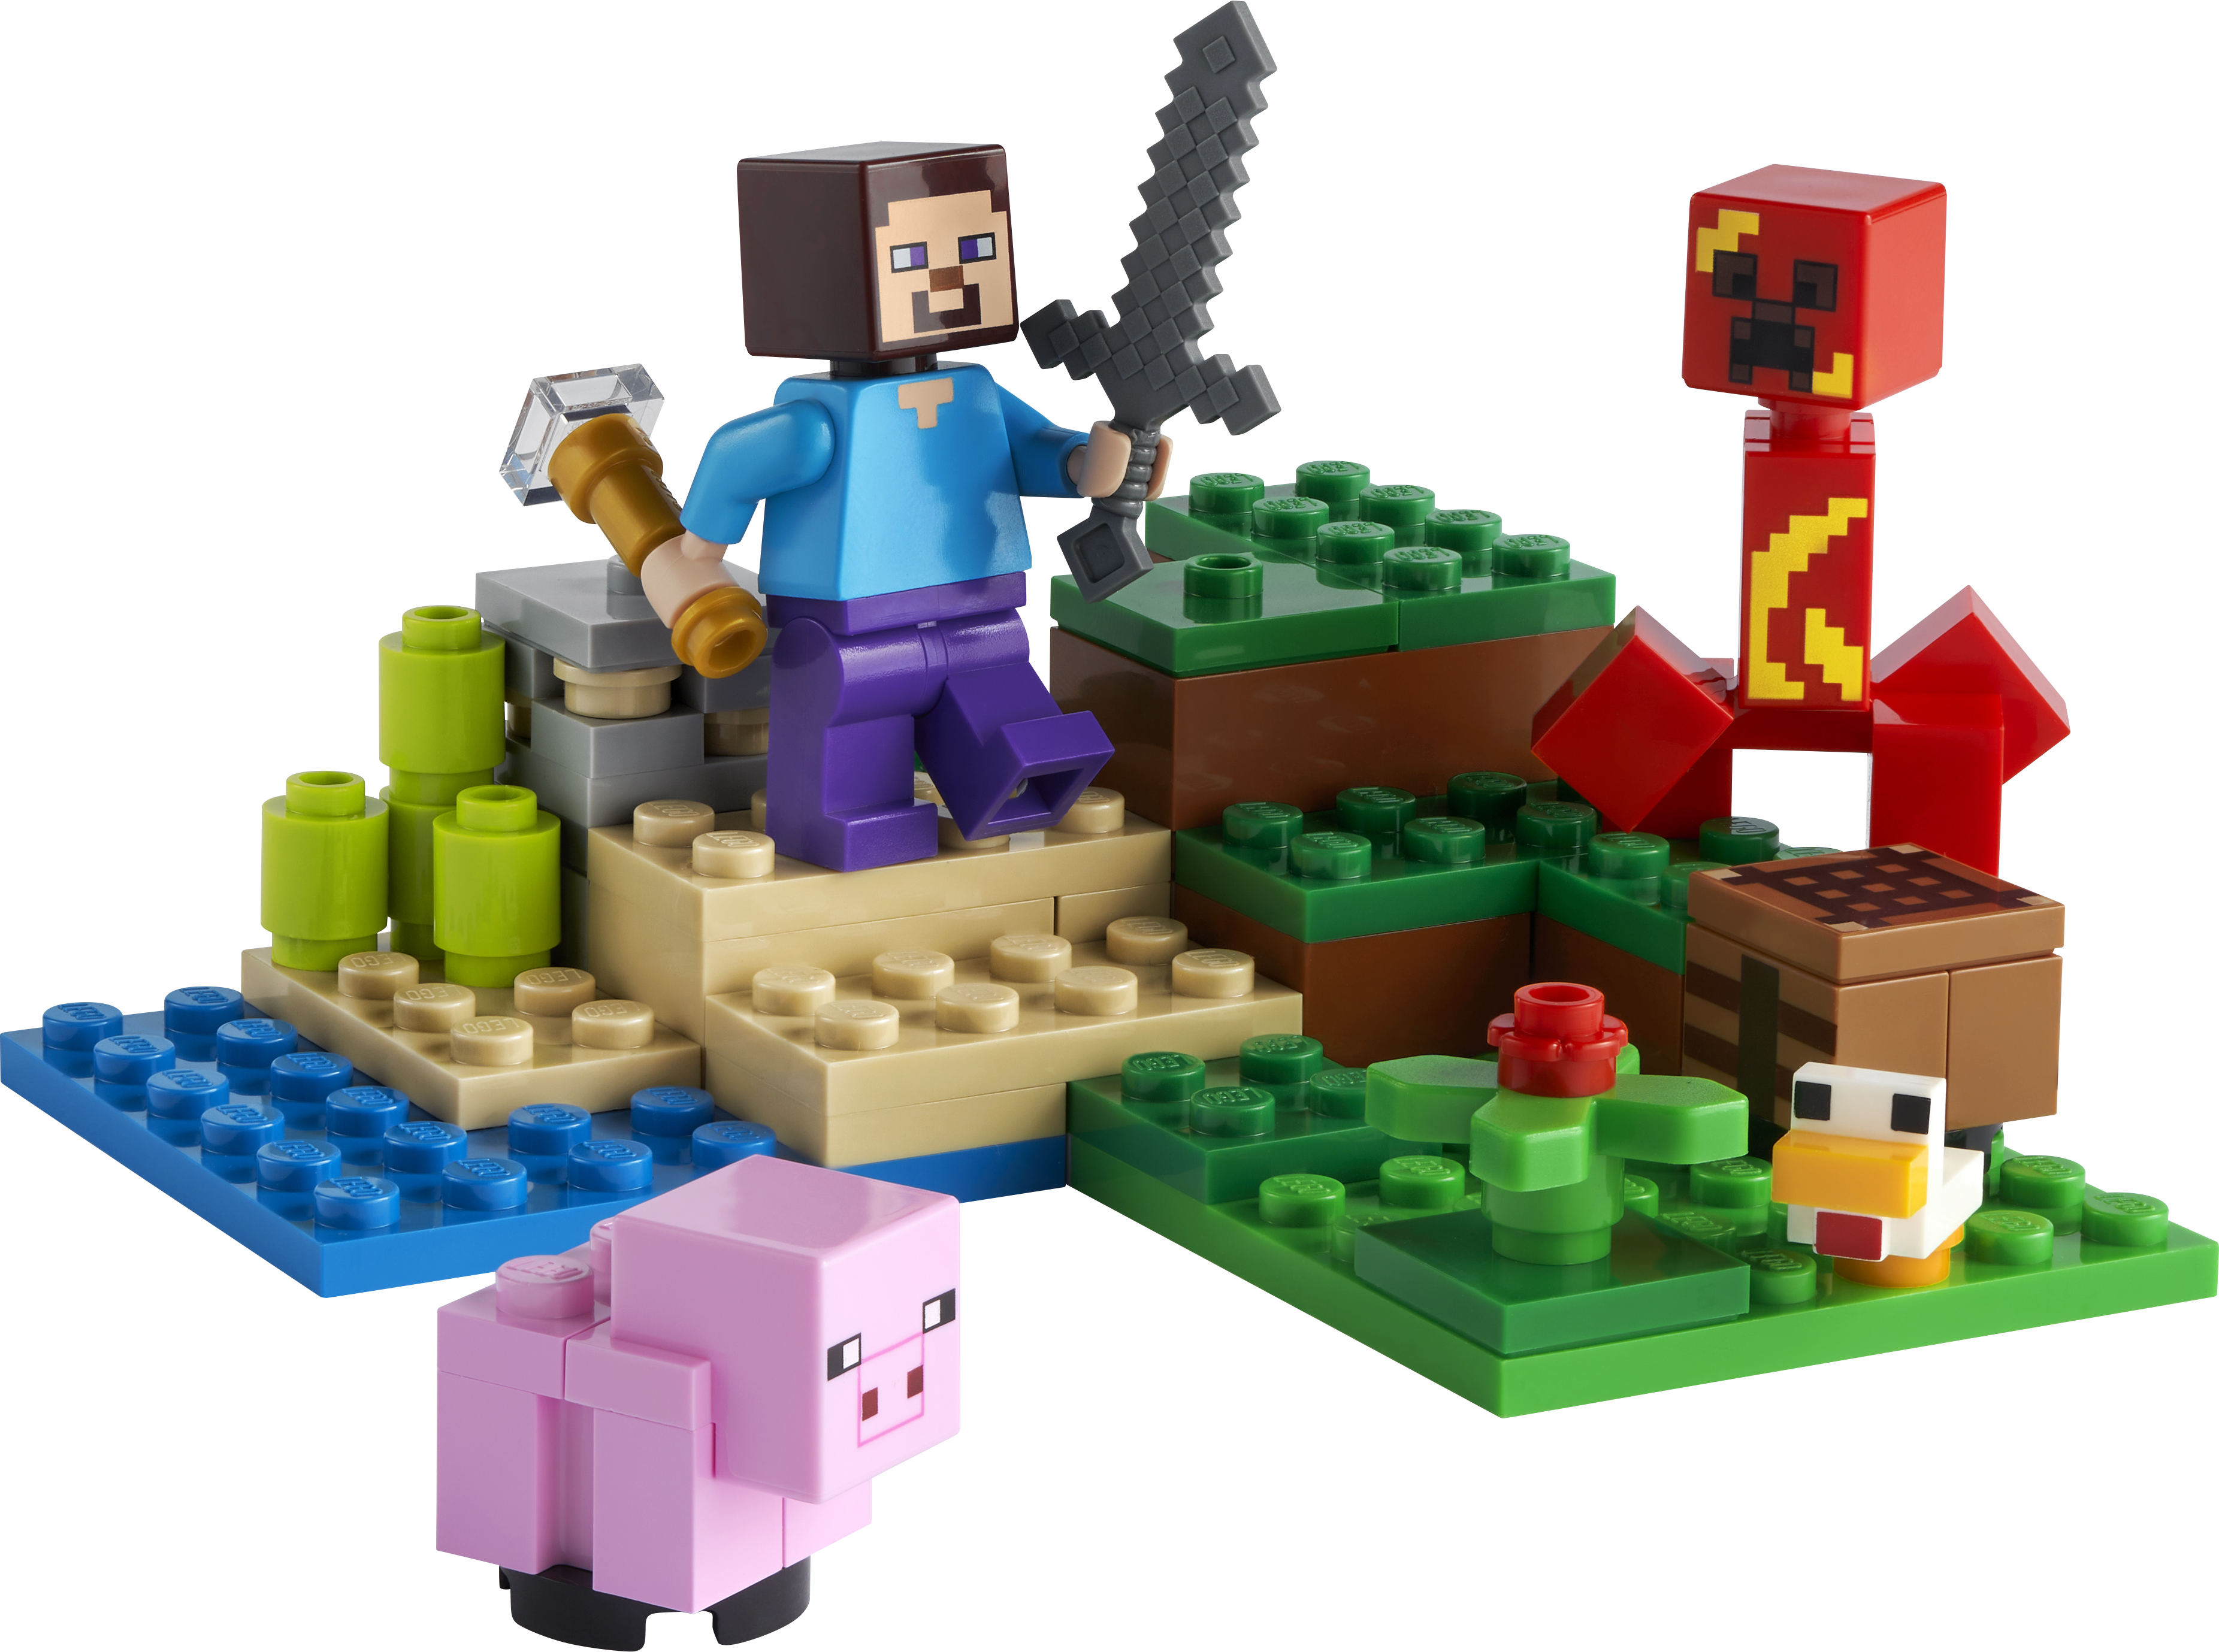 LEGO® Minecraft™ 21177 Der Hinterhalt des Creeper™